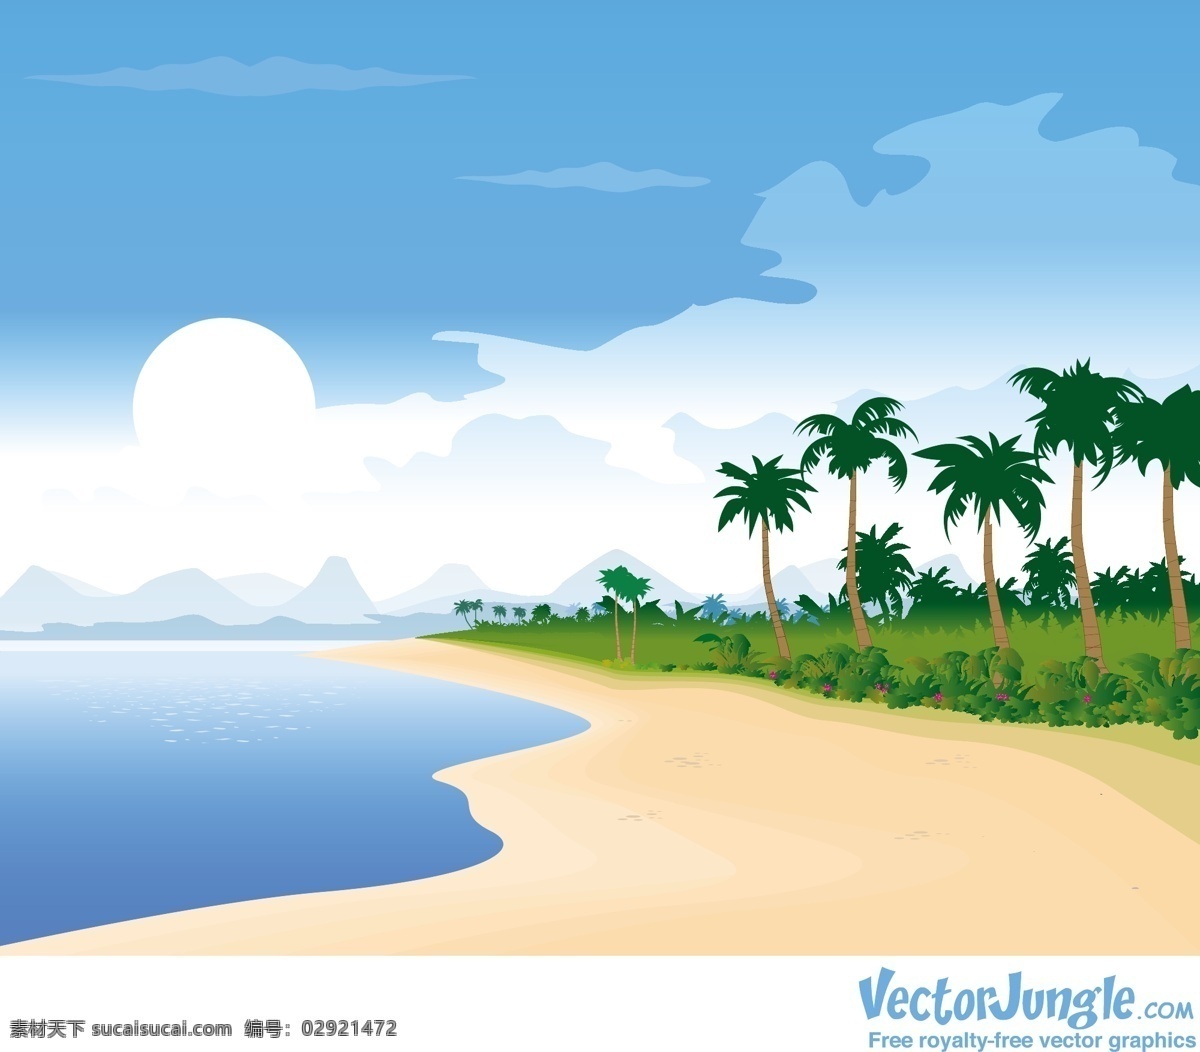 小岛 海岸 风景 矢量 小岛下载 夏威夷风景 风景矢量 夏威夷下载 椰子树 大海 旅游 青色 天蓝色